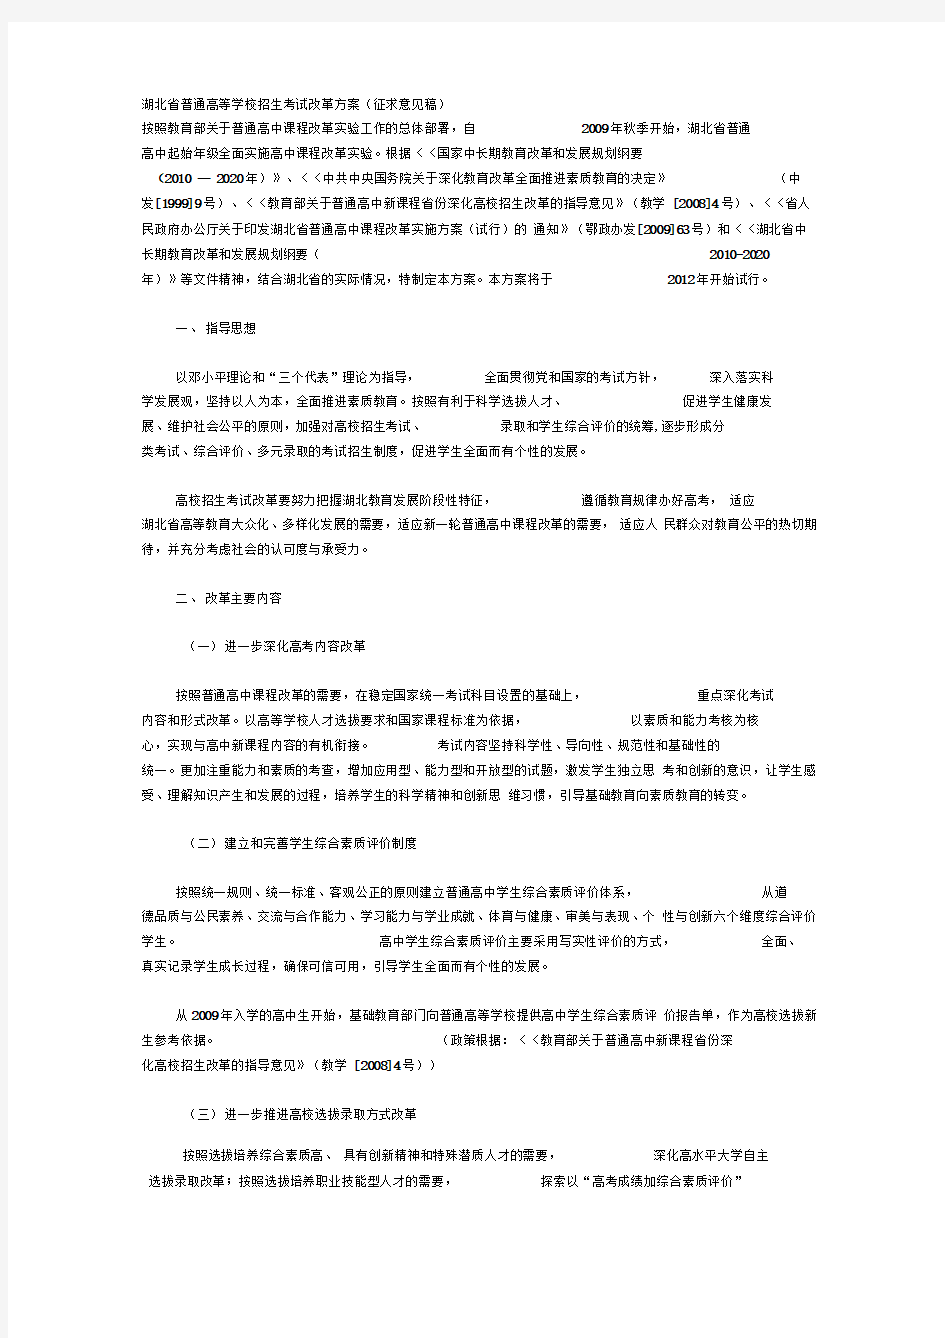 (完整版)湖北省普通高等学校招生考试改革方案